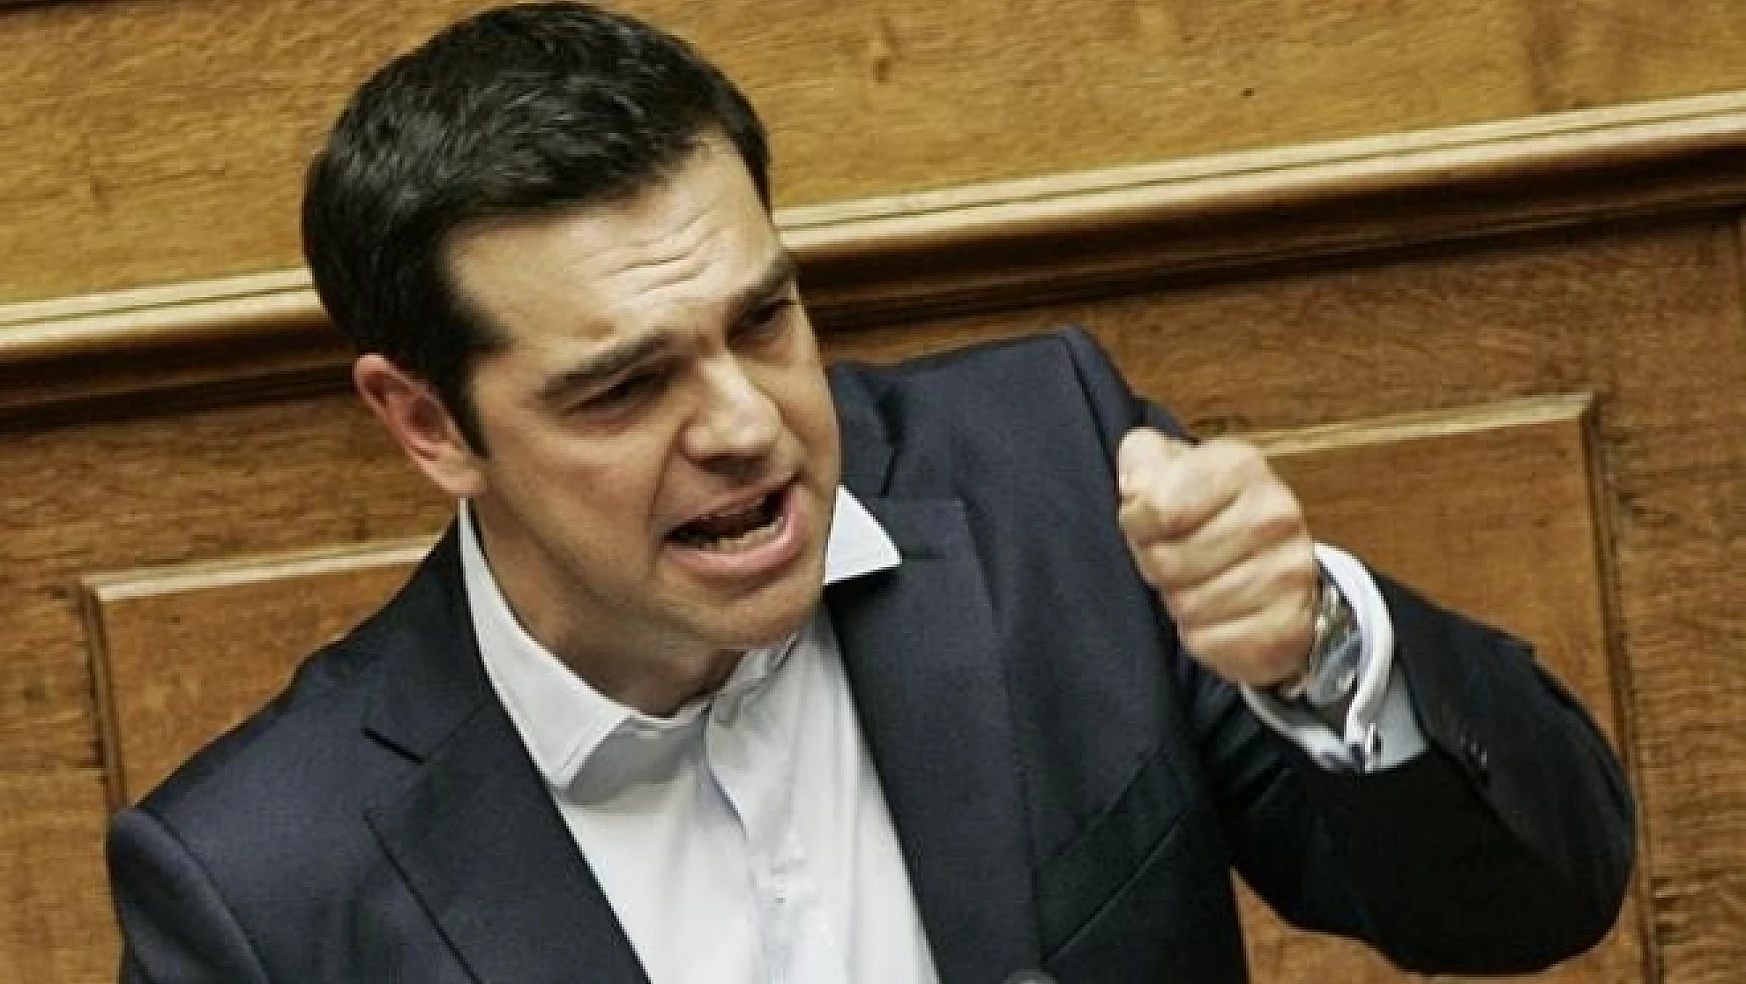 Yunanistan'a kötü haberler art arda geliyor